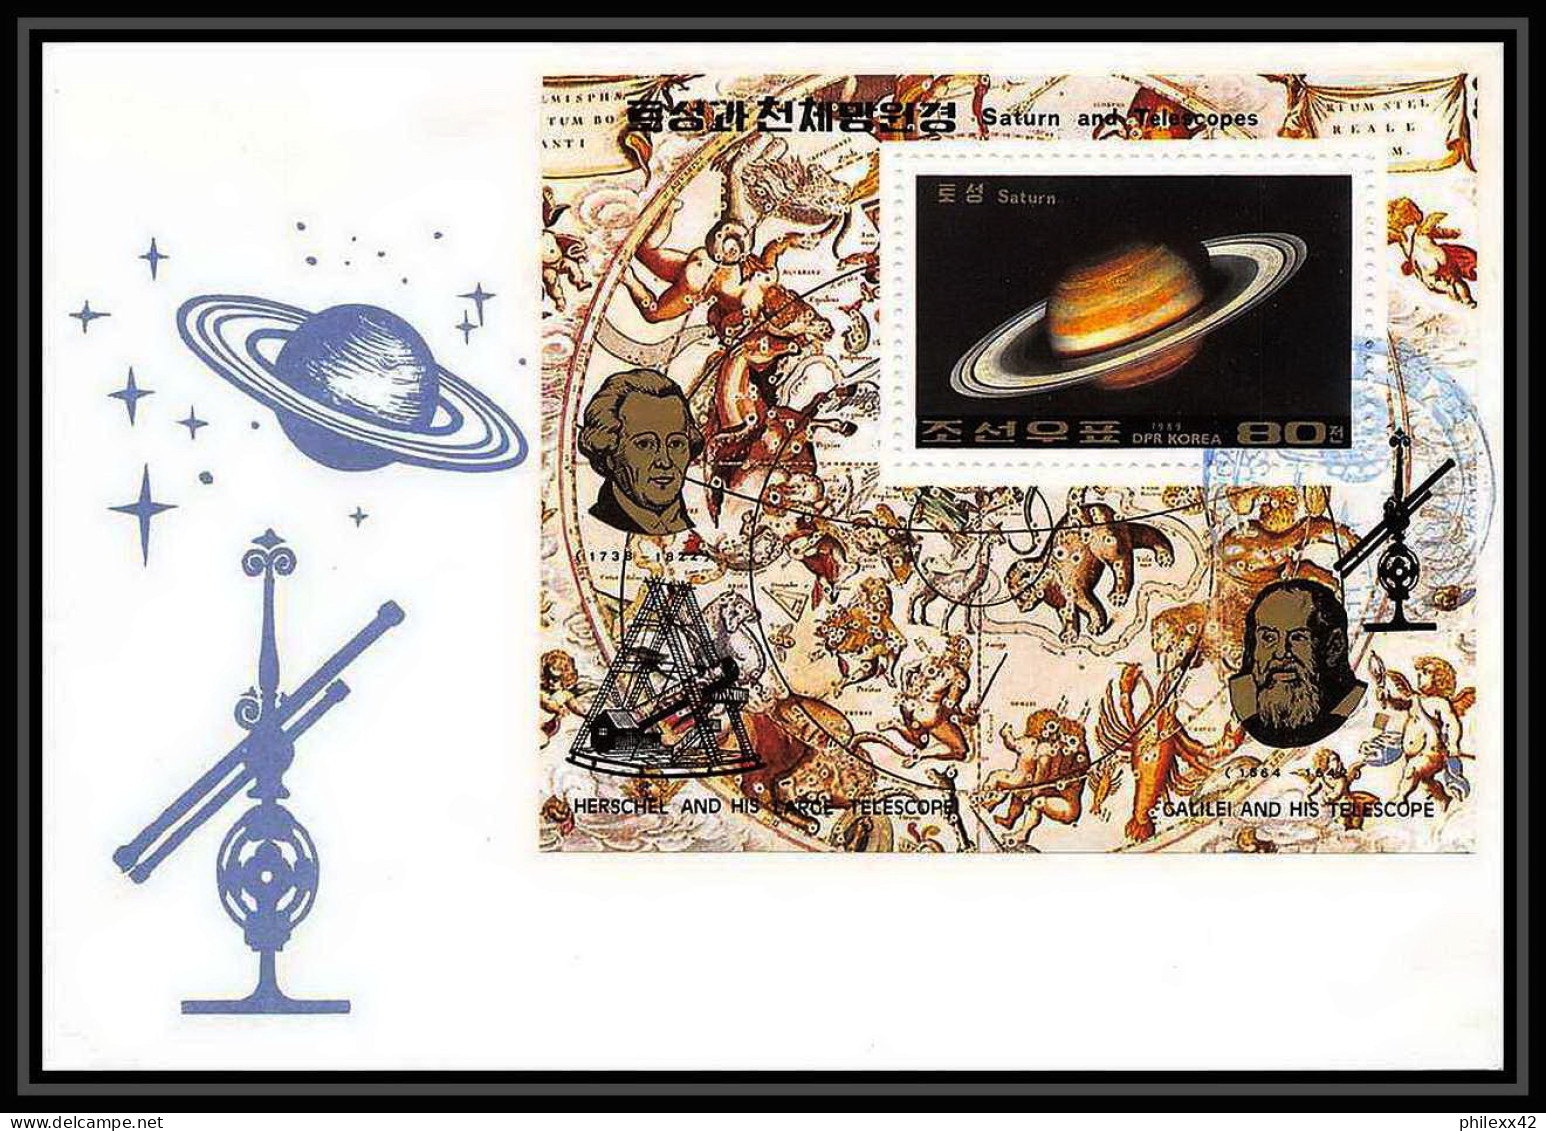 9755/ Espace (space) Lettre (cover) 29/6/1989 Block 247 Planet Saturn Telescopes Corée (korea) - Asien